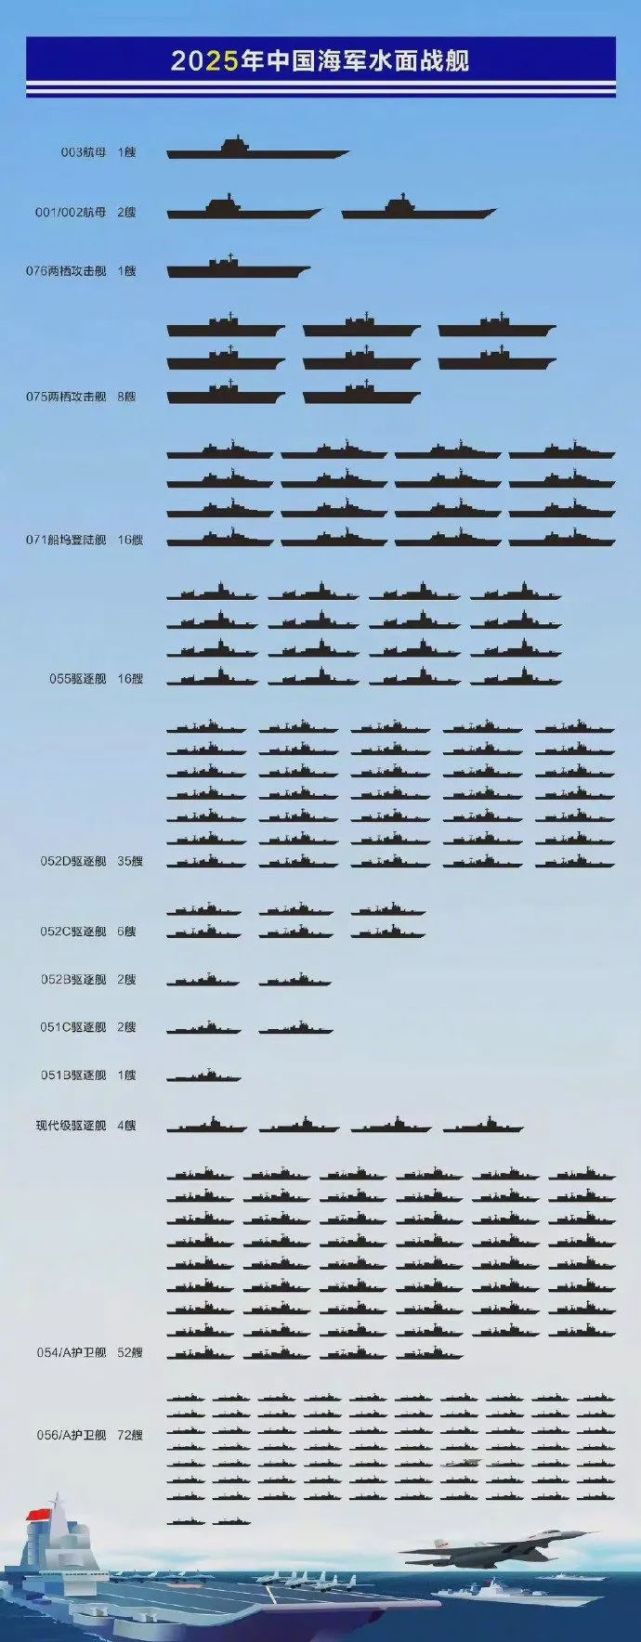 后续055迎重大升级,中国海军总吨位将破330万吨